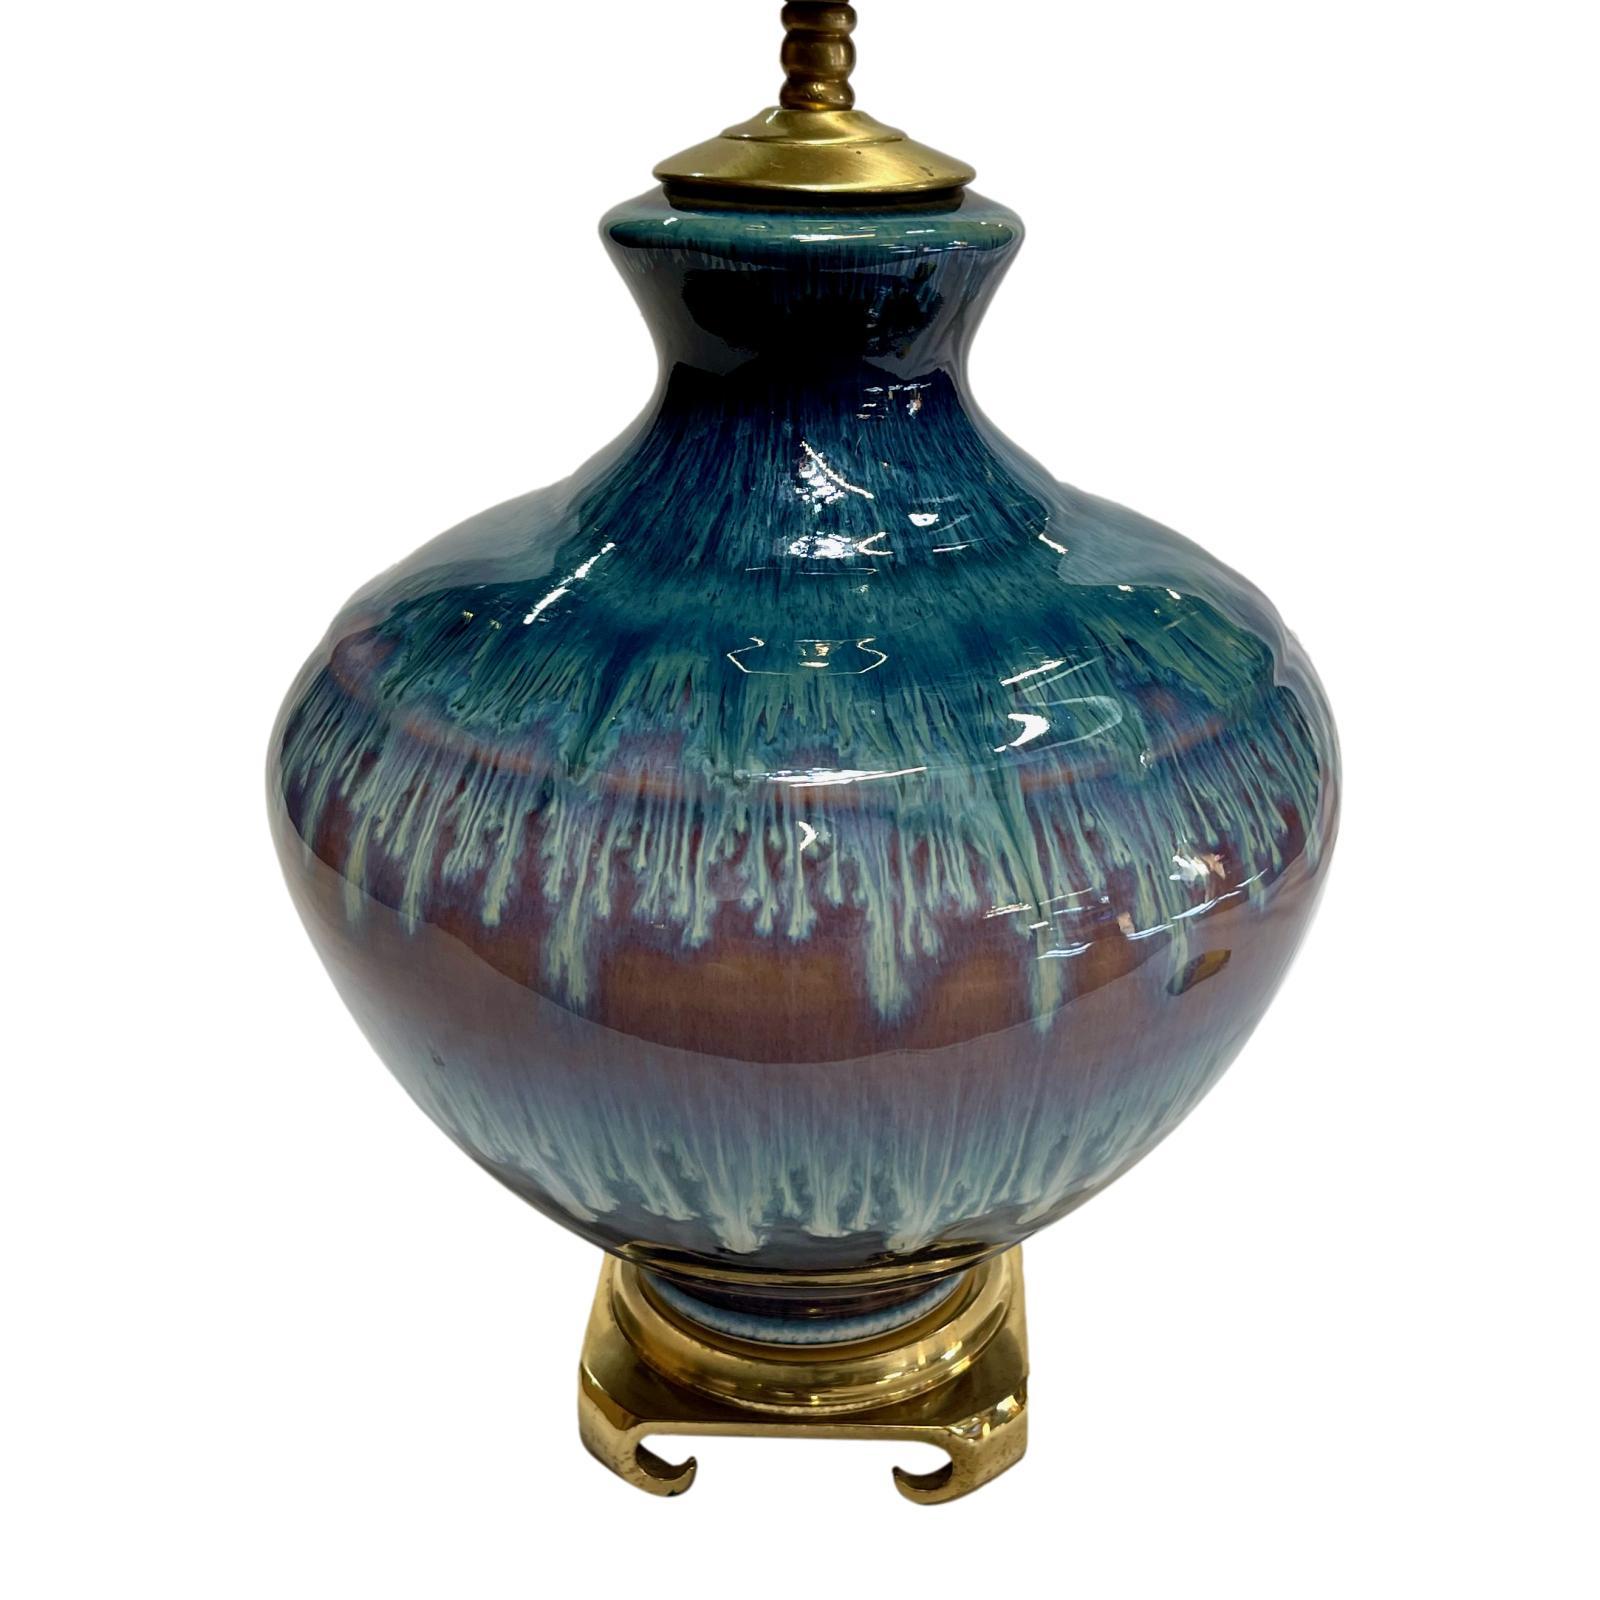 Une seule lampe de table en porcelaine émaillée anglaise datant des années 1920 avec une base en bronze.

Mesures :
Hauteur du corps : 12 pouces
Hauteur jusqu'au support de l'abat-jour : 22